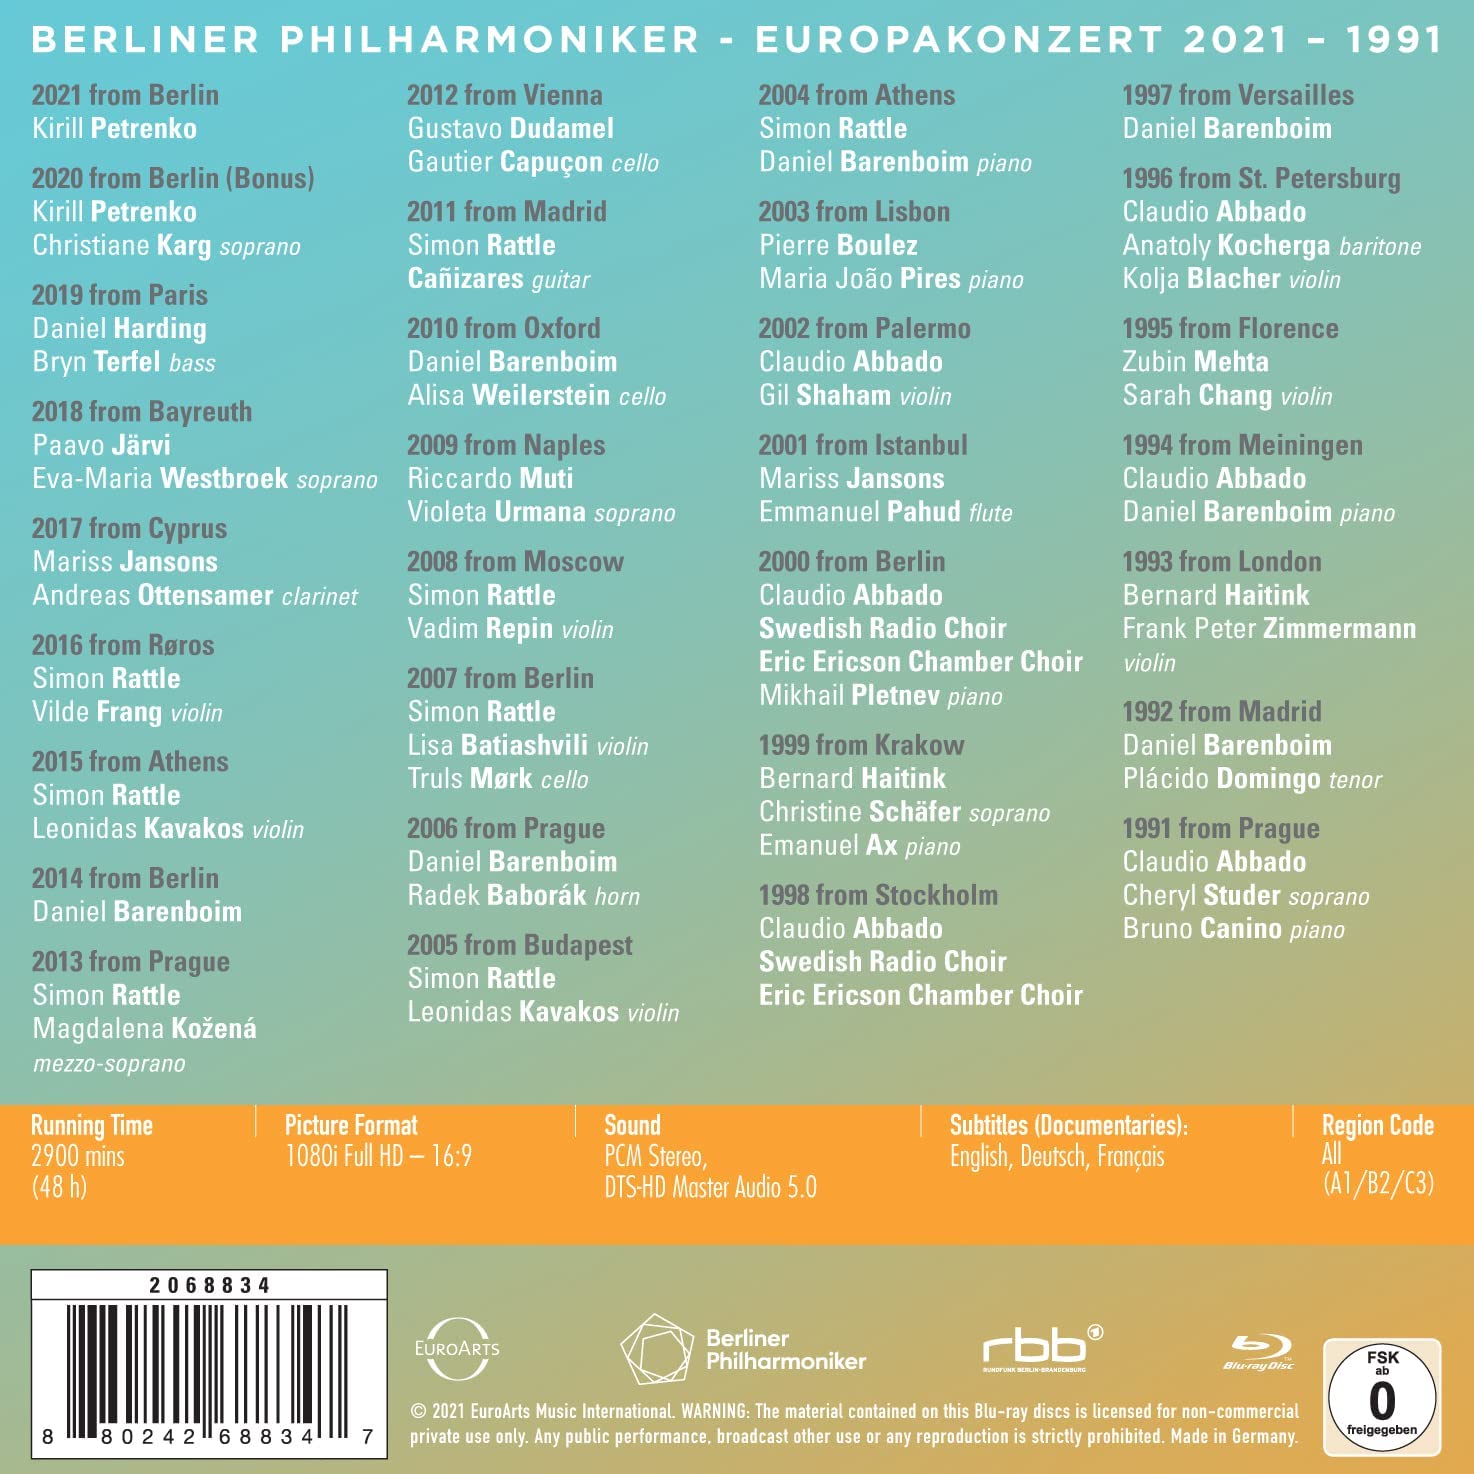 베를린 필 유로파 콘서트 30주년 기념 블루레이 박스세트 (Berliner Philharmoniker 30 years of EUROPAKONZERT 1991-2021)